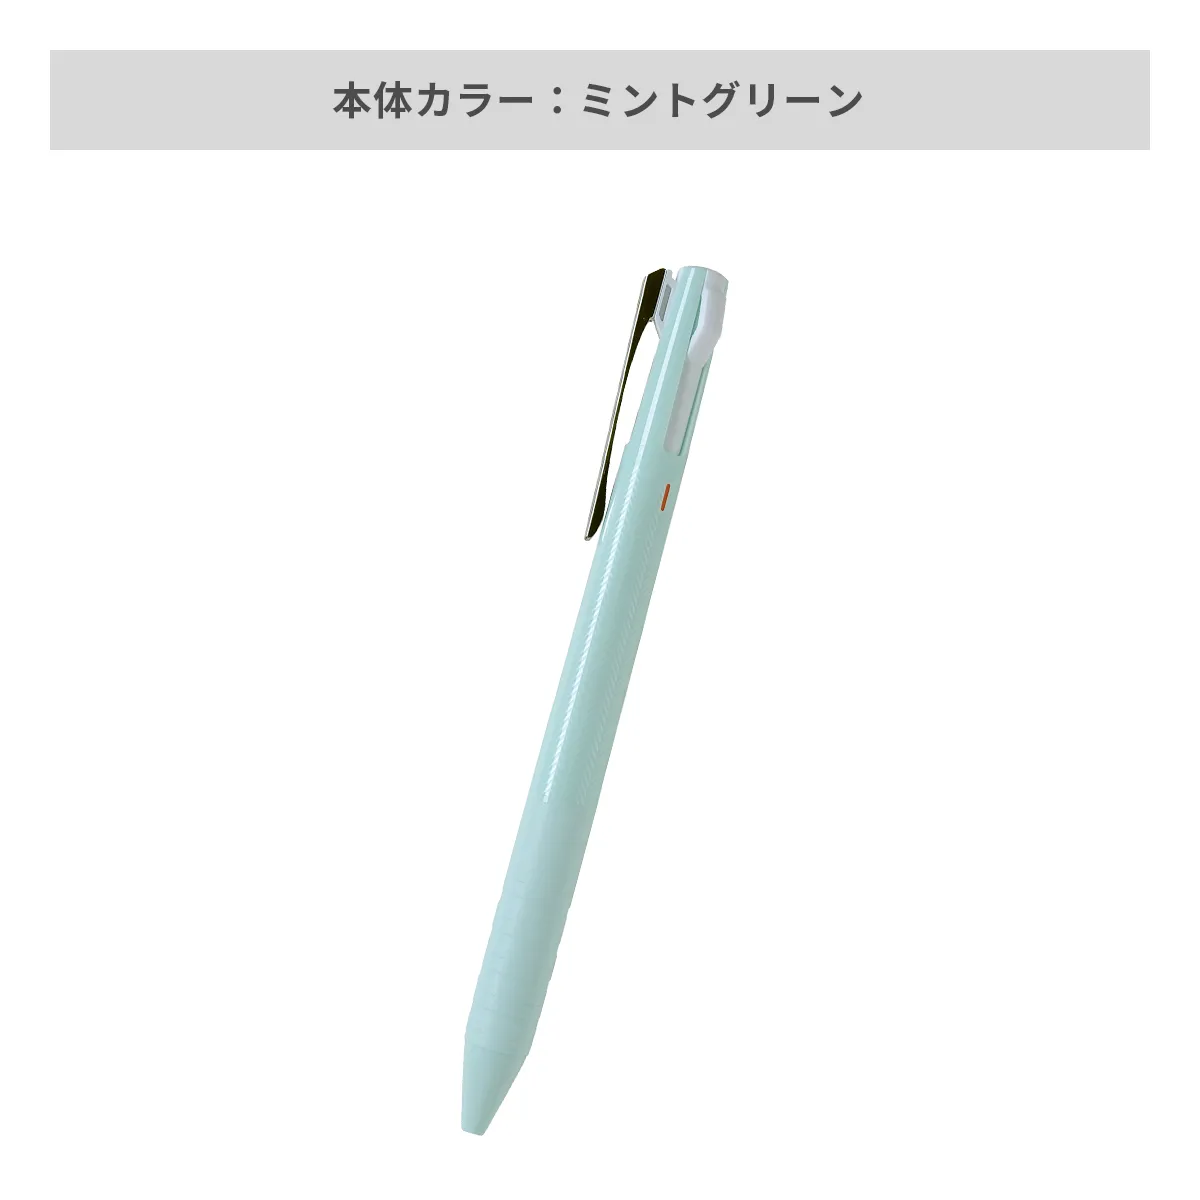 三菱鉛筆 ジェットストリーム スリムコンパクト 3色ボールペン 0.38mm【名入れボールペン / パッド印刷】 画像4